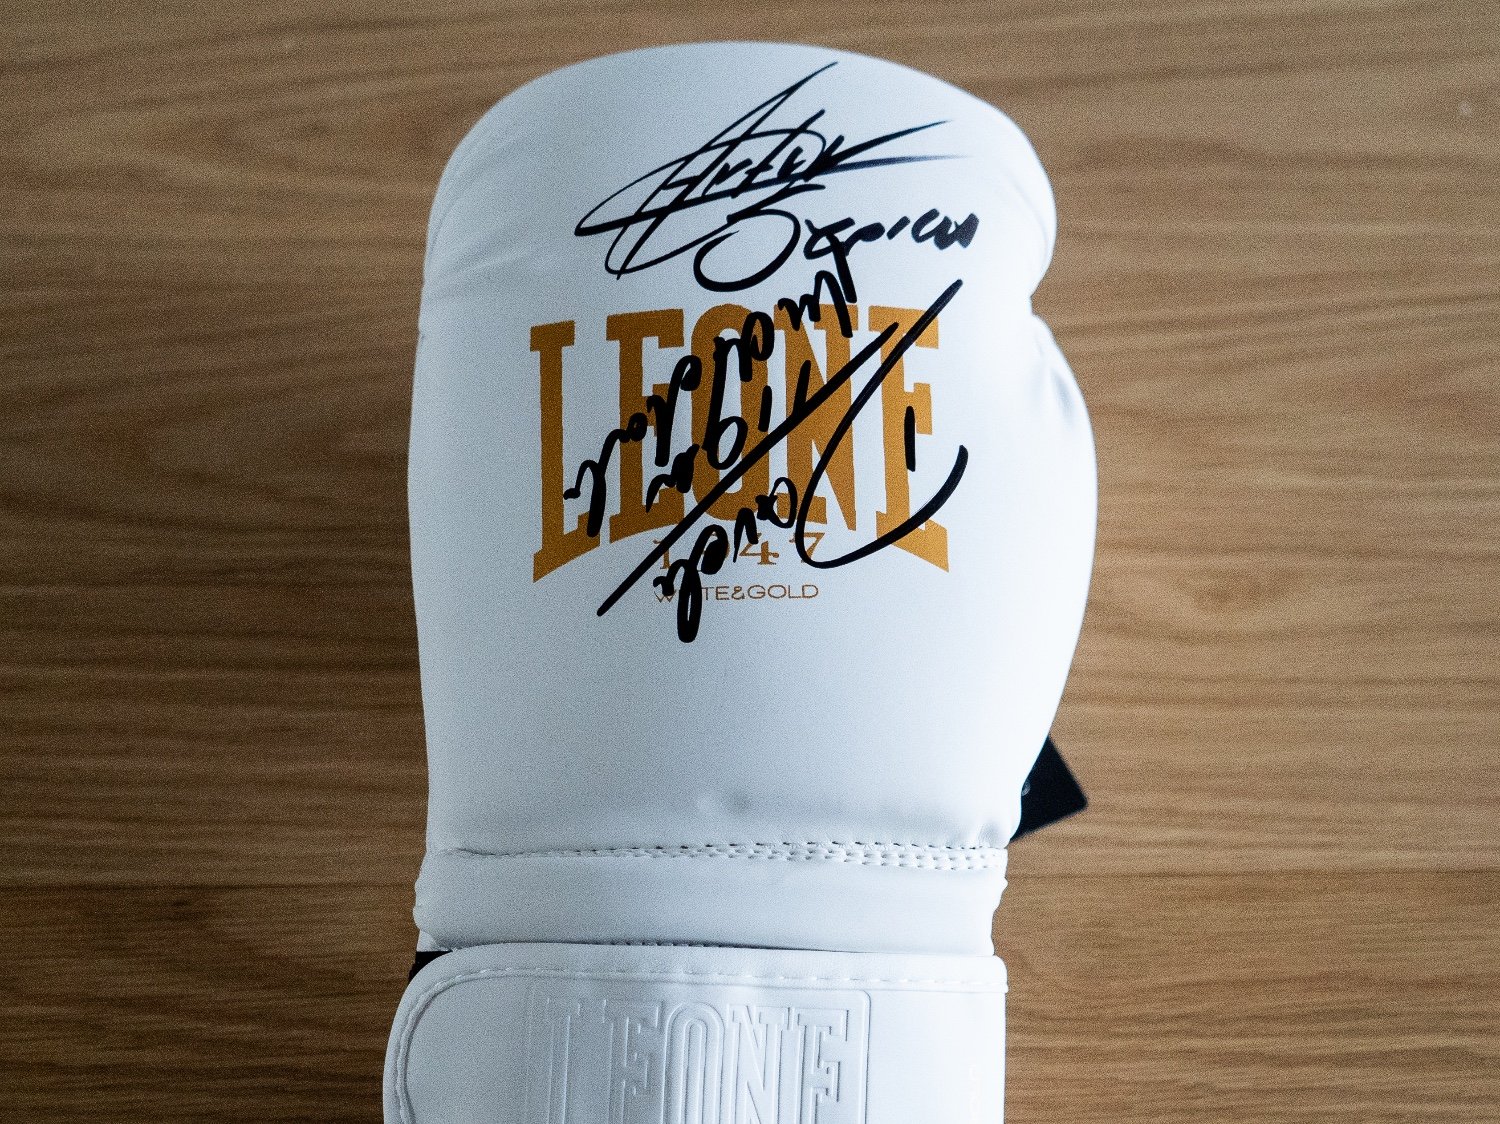 Unikatowa biała LEWA rękawica bokserska z podpisem Legend boksu🔥